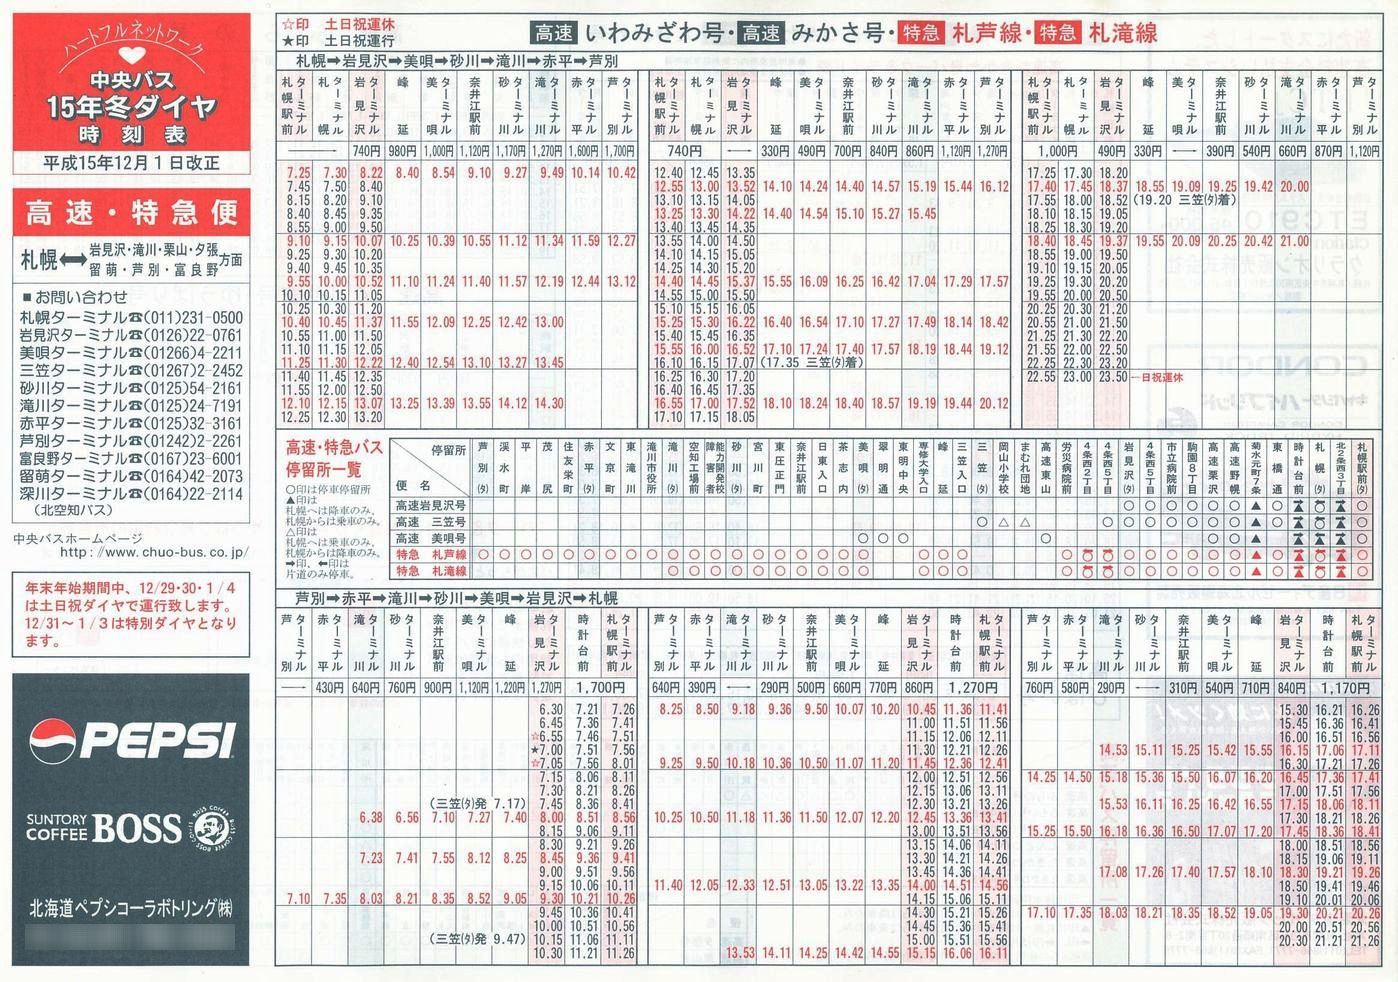 2003-12-01改正_北海道中央バス(空知)_高速特急便時刻表表面